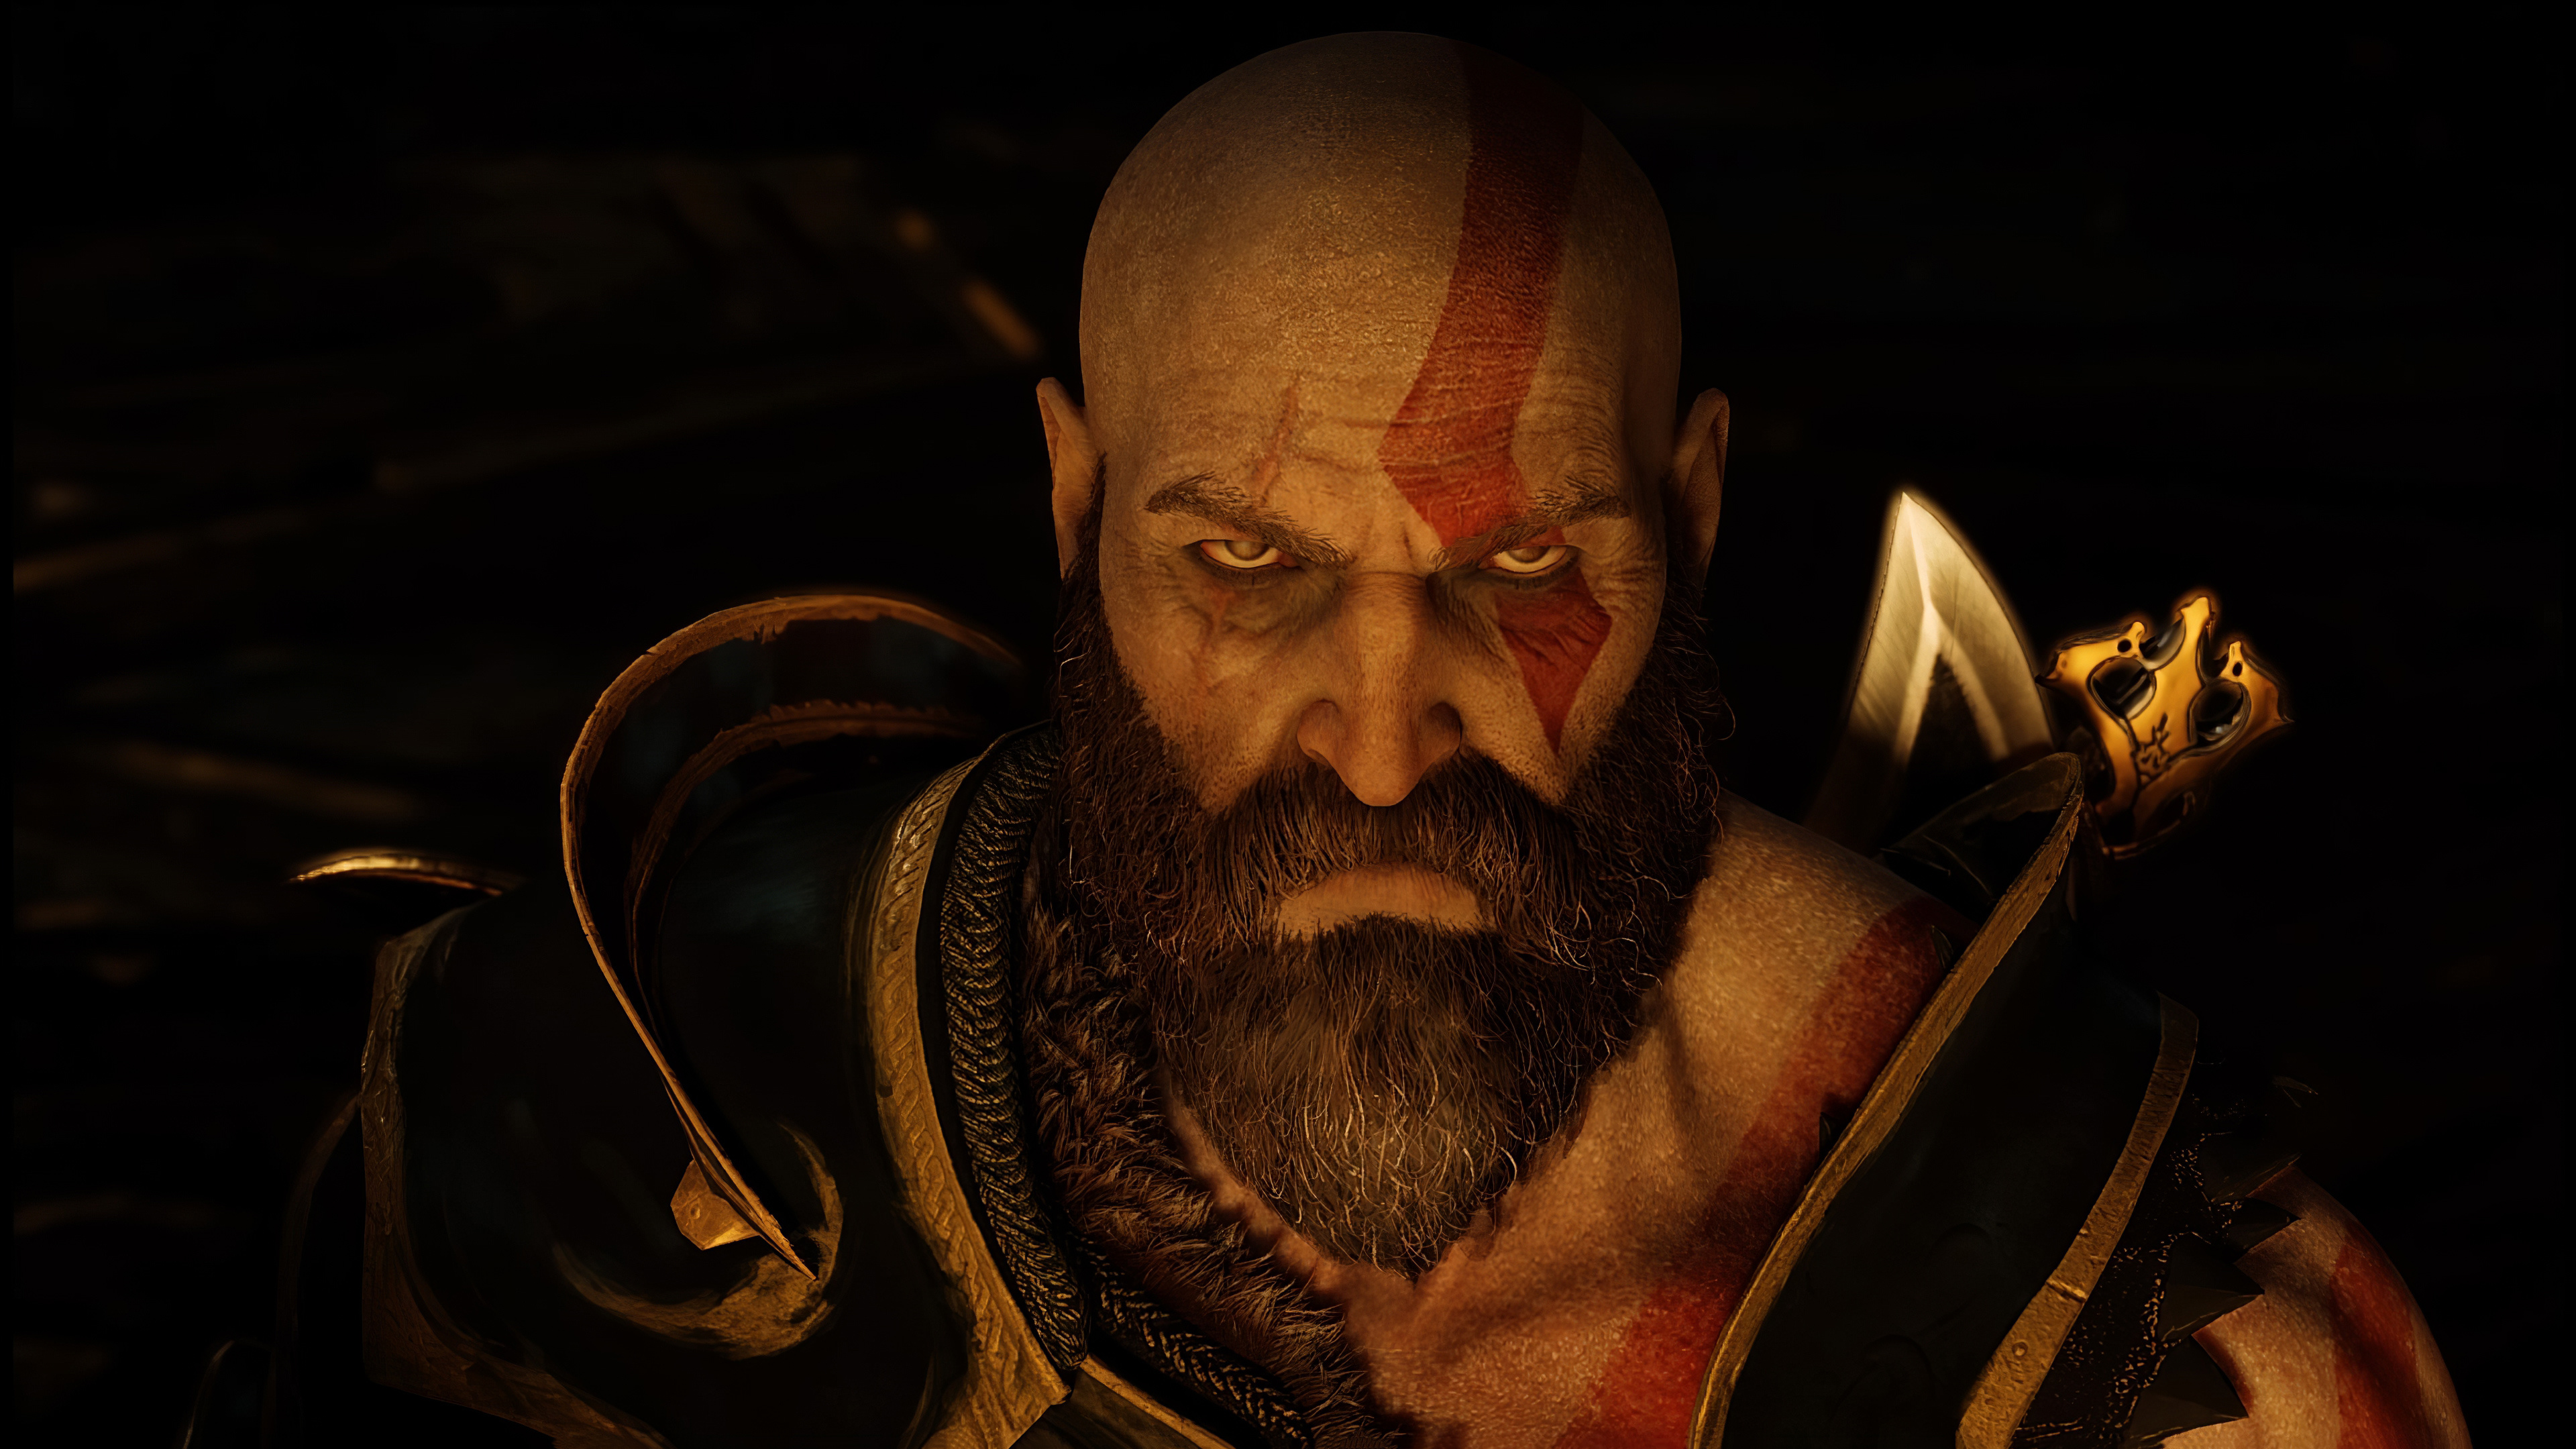 Kratos angry eyes, God of War 4, Intense gaming moments, 3840x2160 4K Desktop